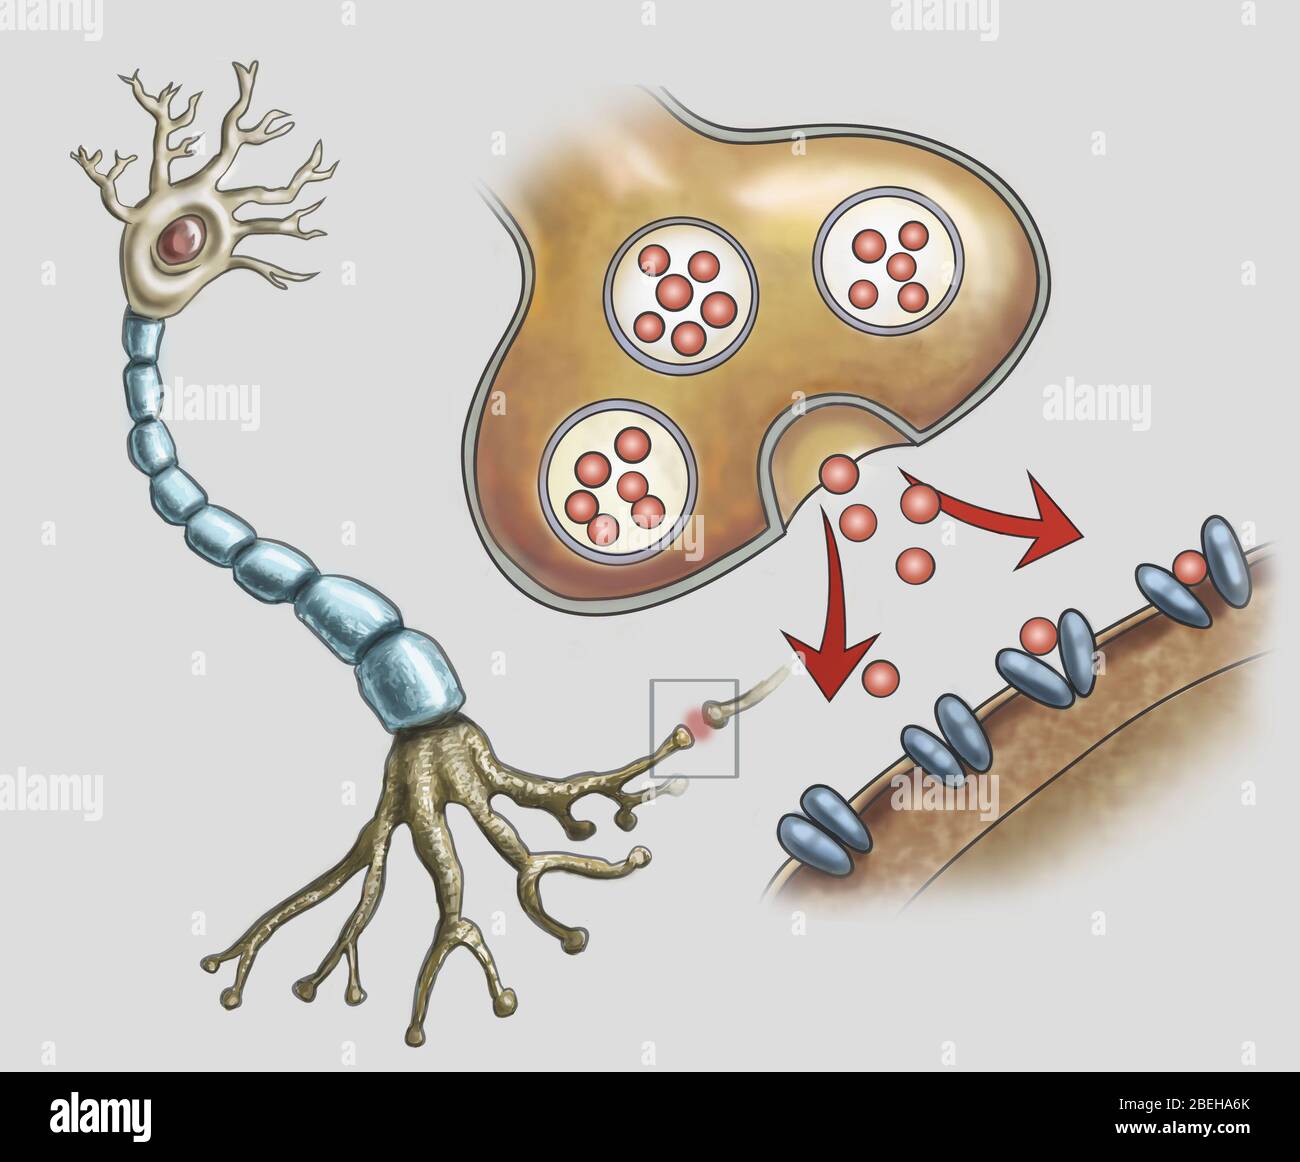 Illustration d'une structure nerveuse normale et de synapses, les signaux électriques sont transférés d'un neurone à l'autre. Banque D'Images